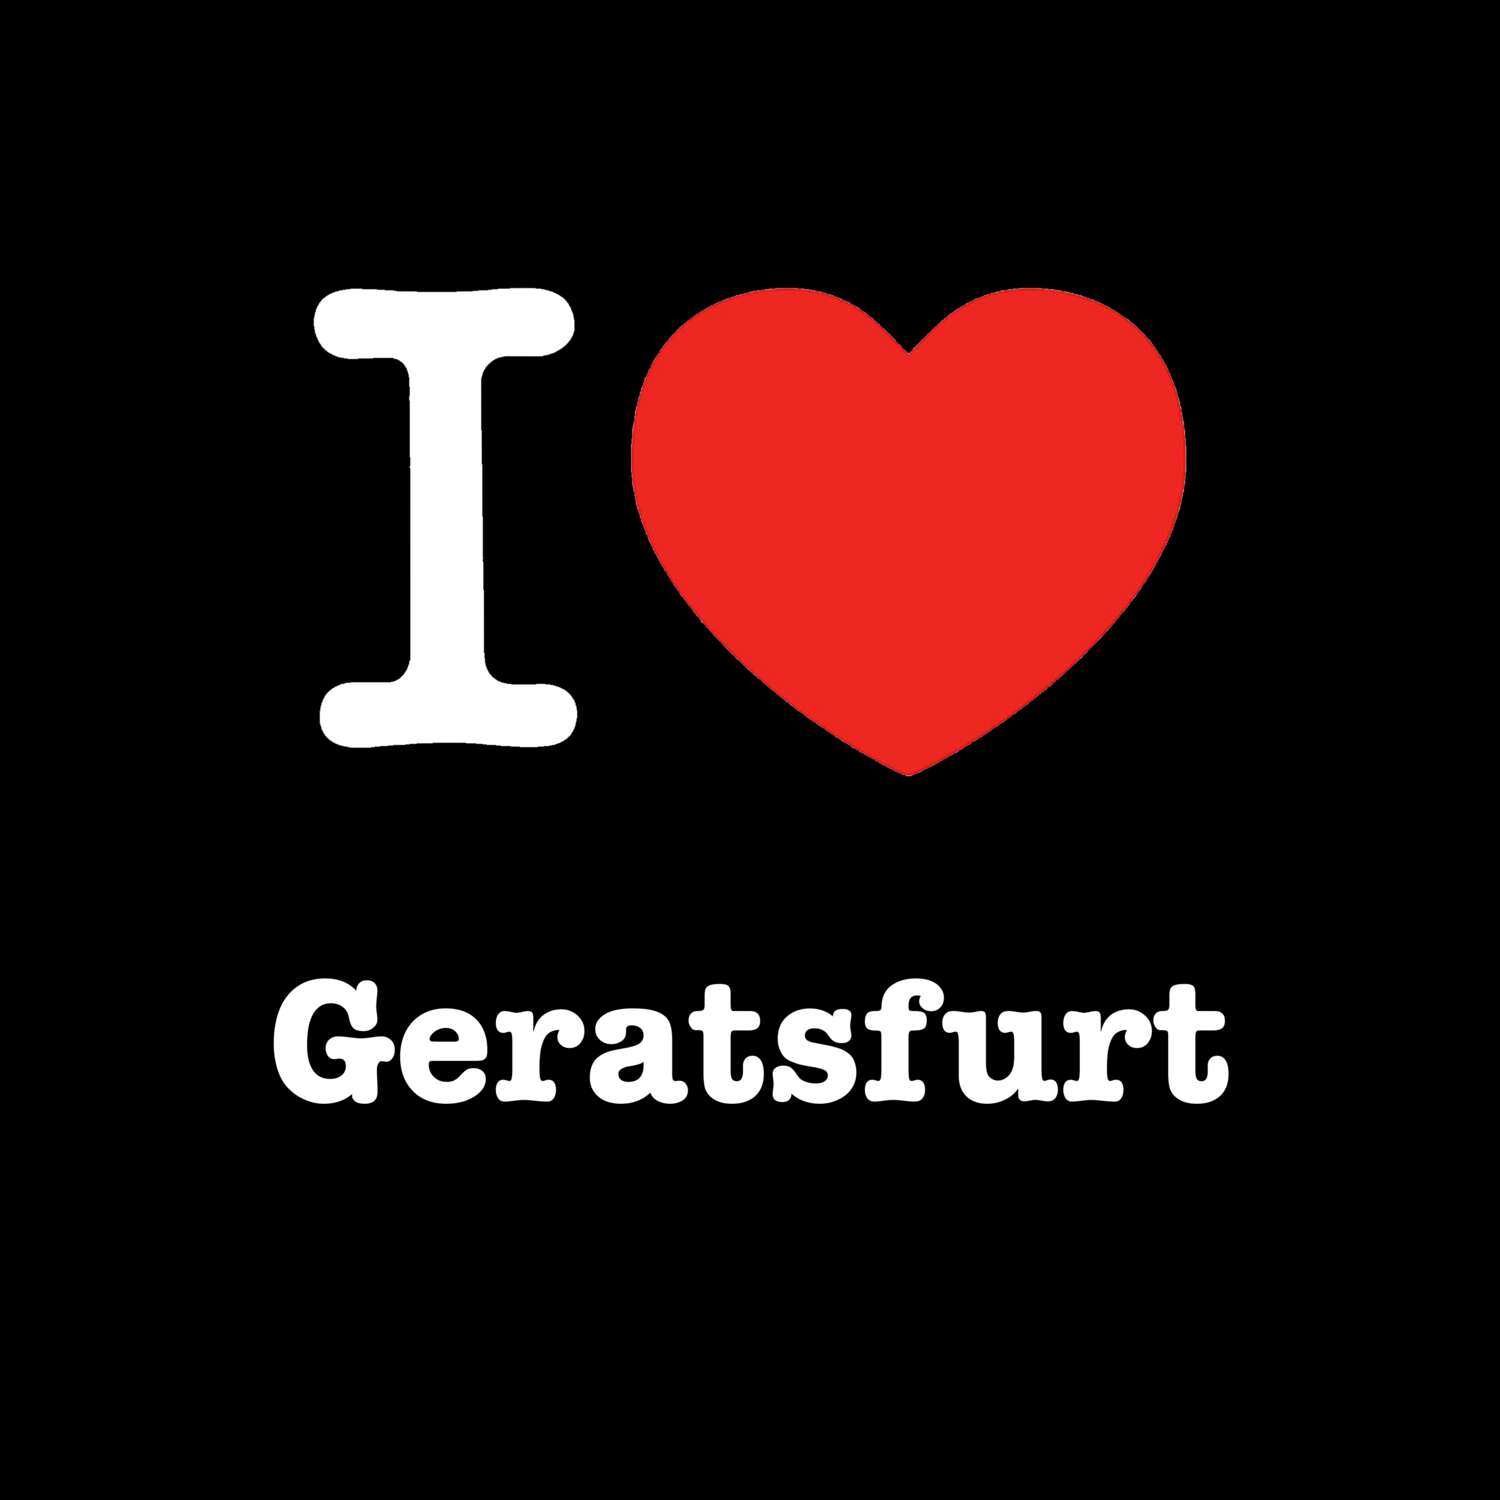 Geratsfurt T-Shirt »I love«